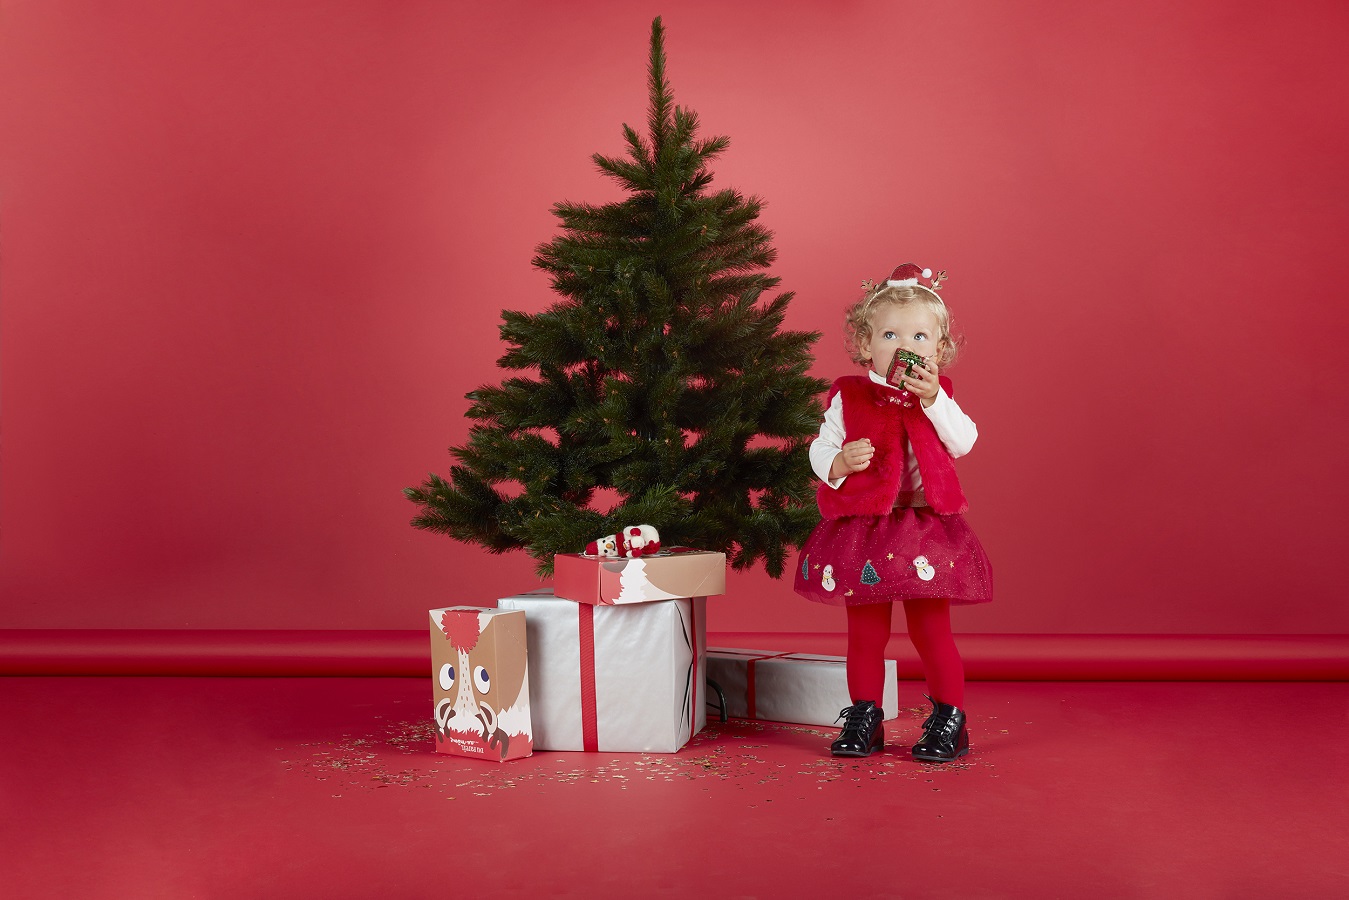 Μια λίστα με «μαγικές» προτάσεις δώρων που θα ομορφύνουν τις γιορτές των παιδιών